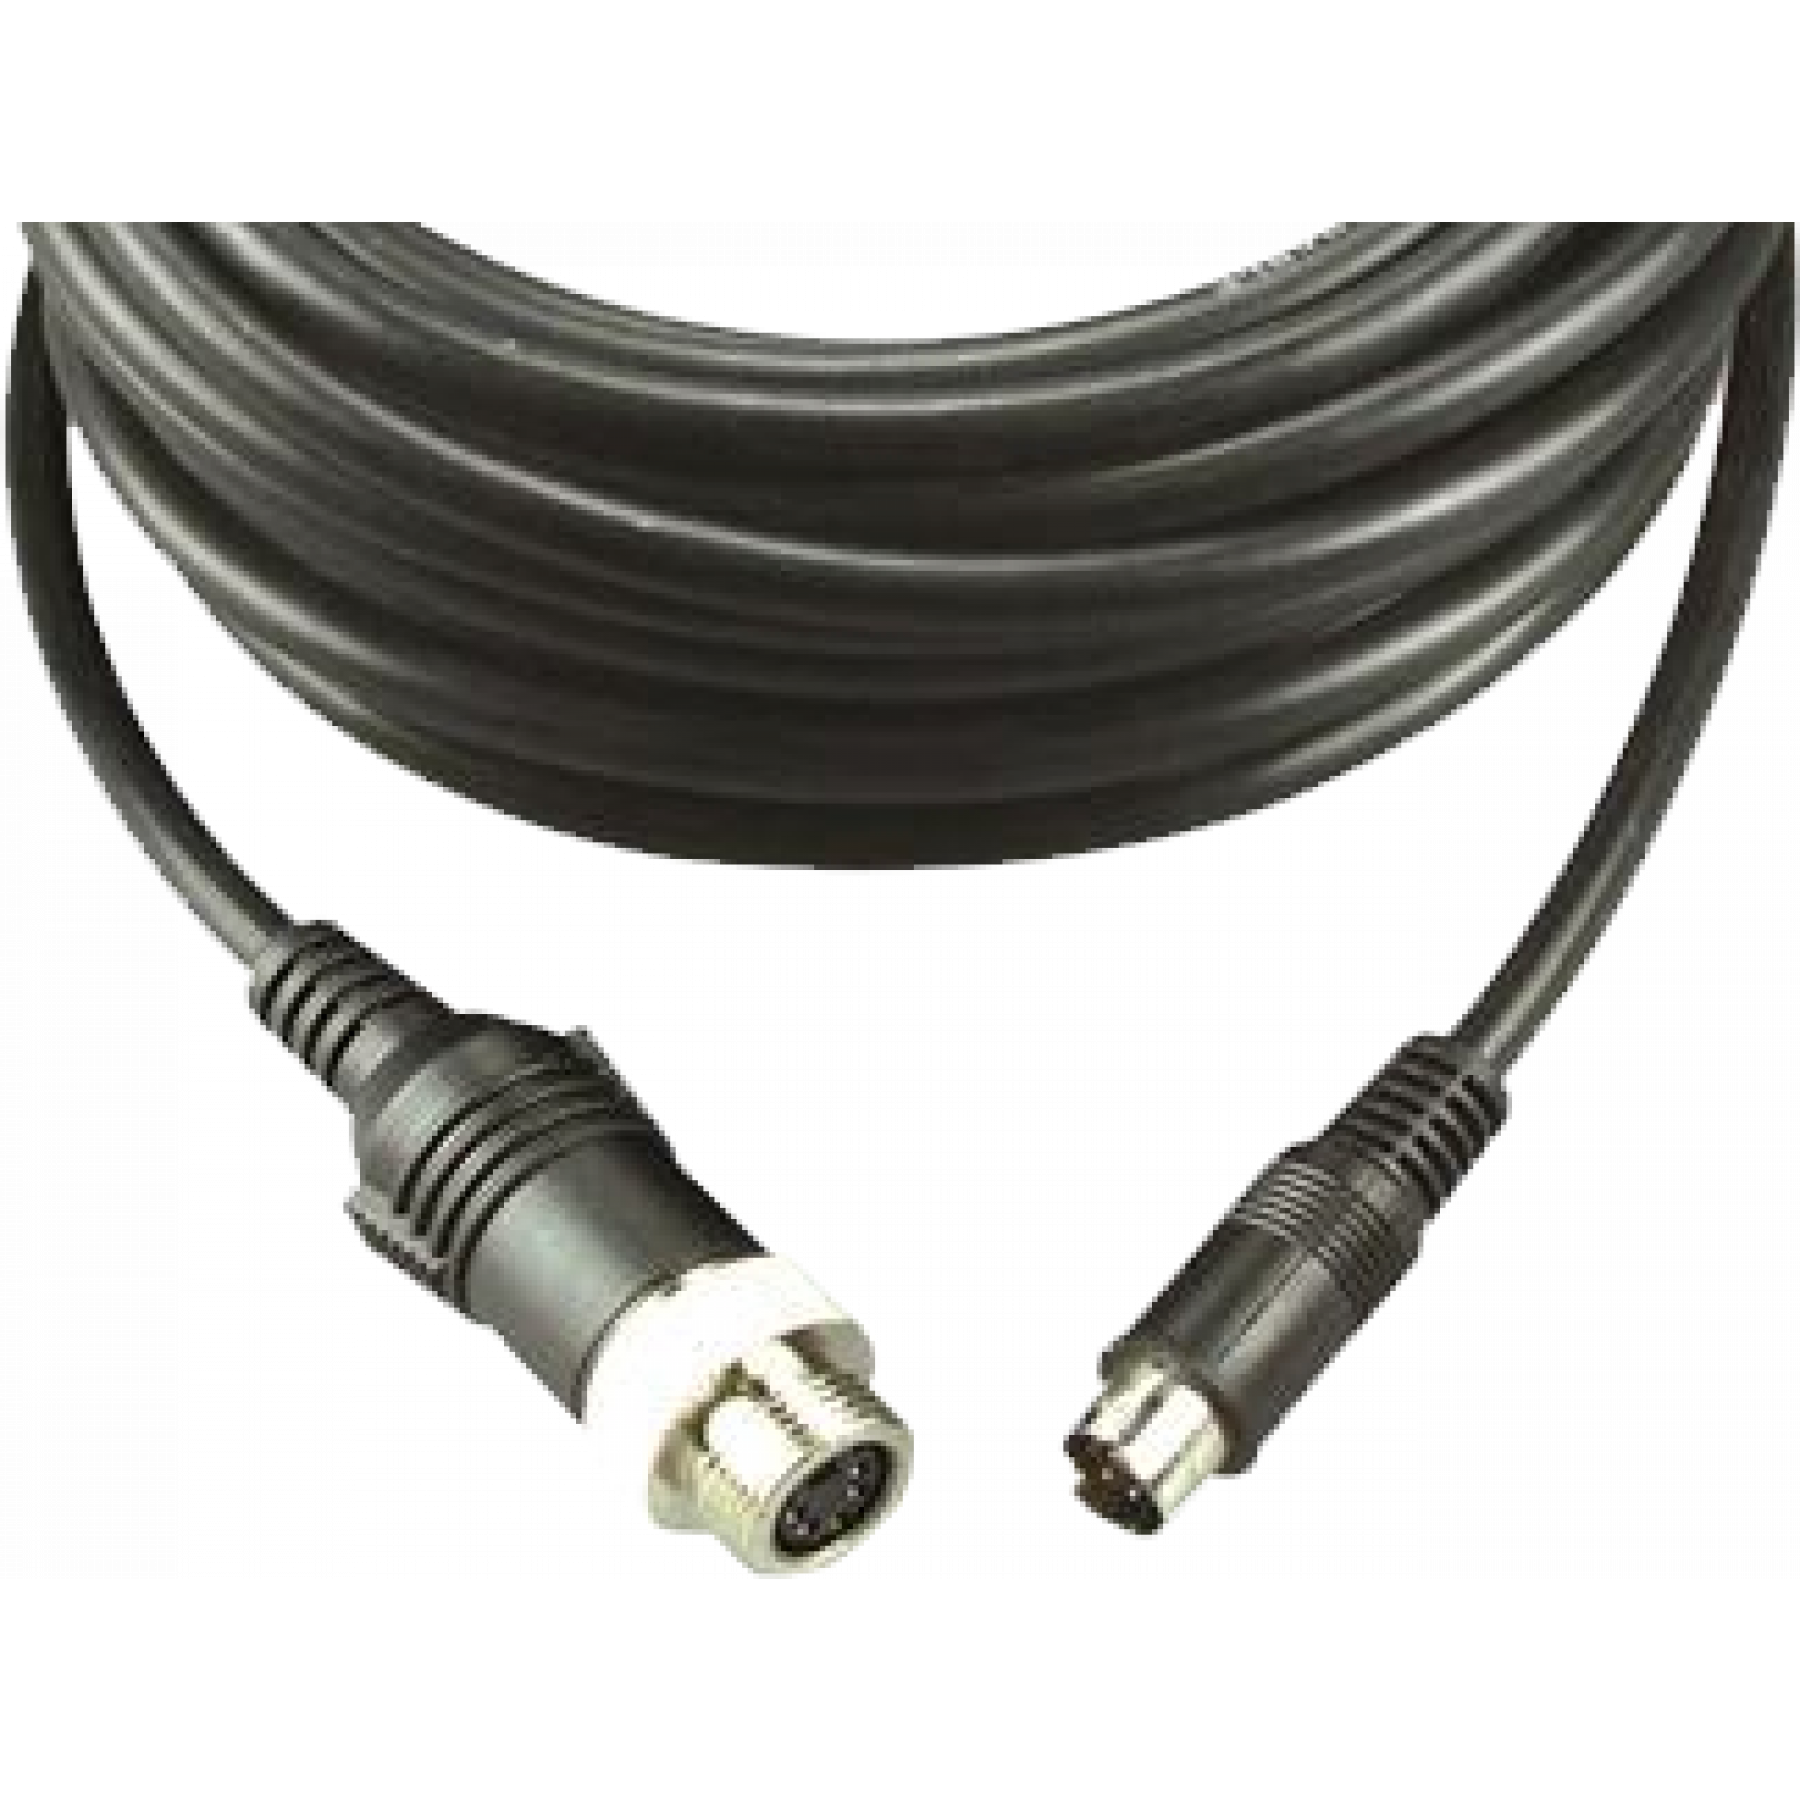 MXN kabel 2.5 meter